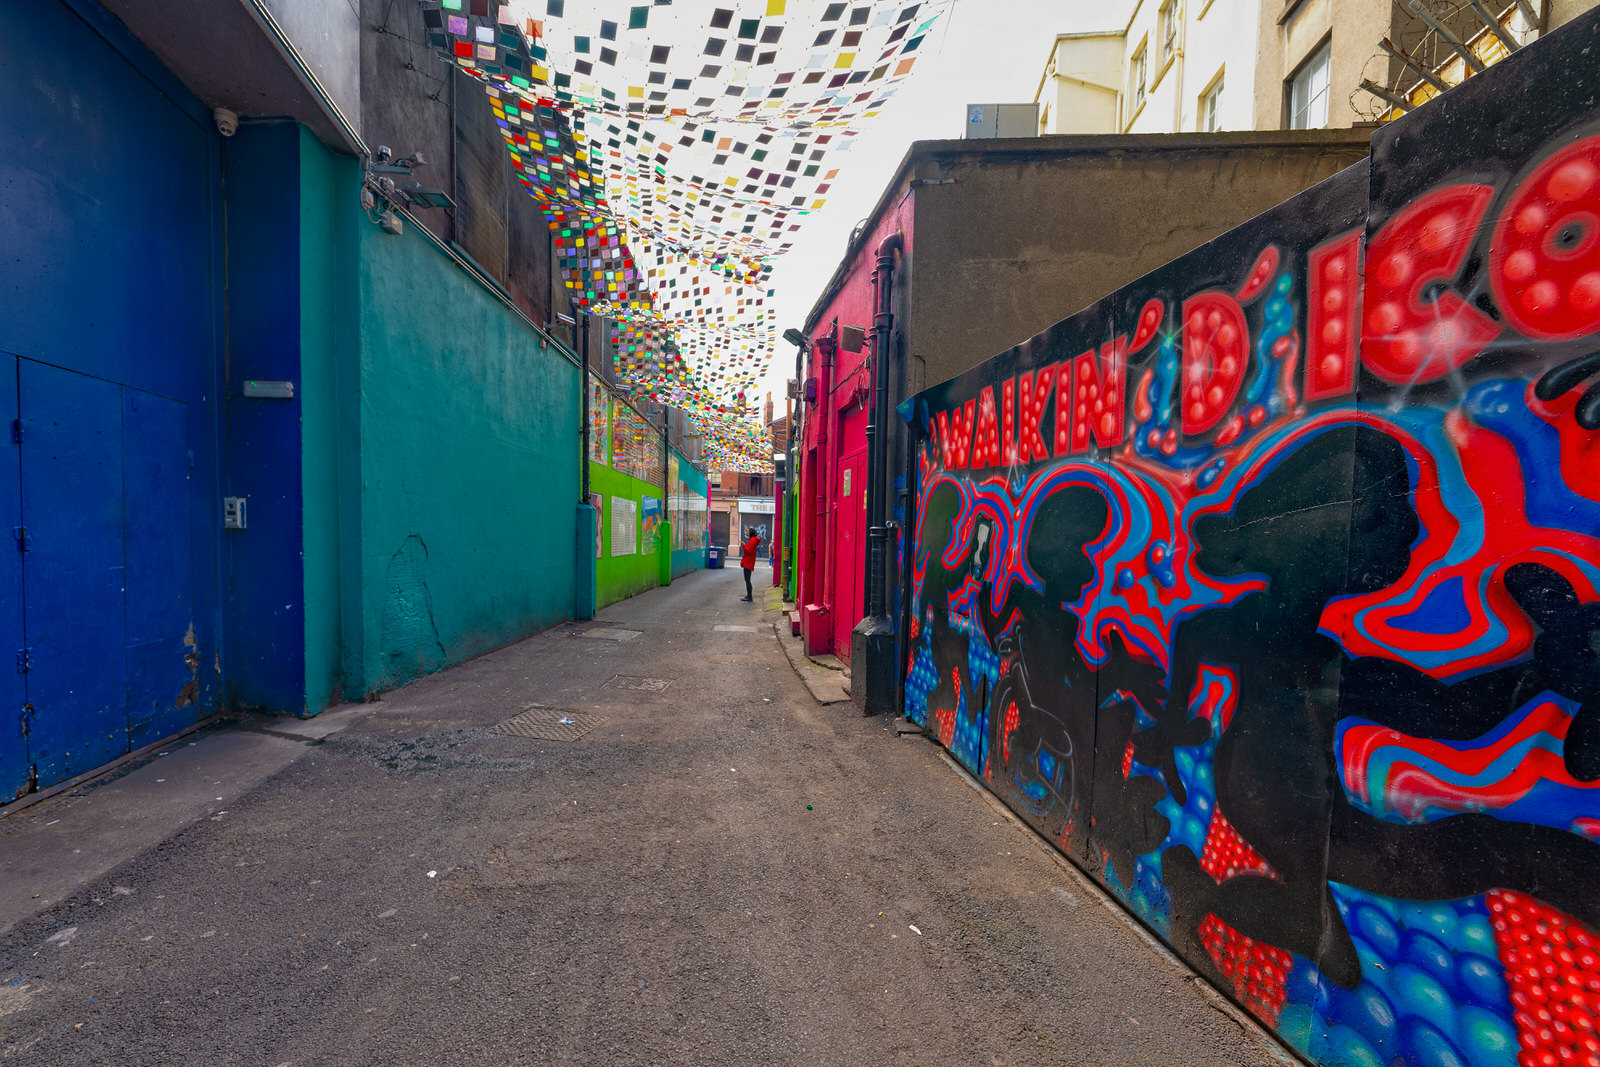 BEDFORD LANE | DUBLIN STREET IMAGES